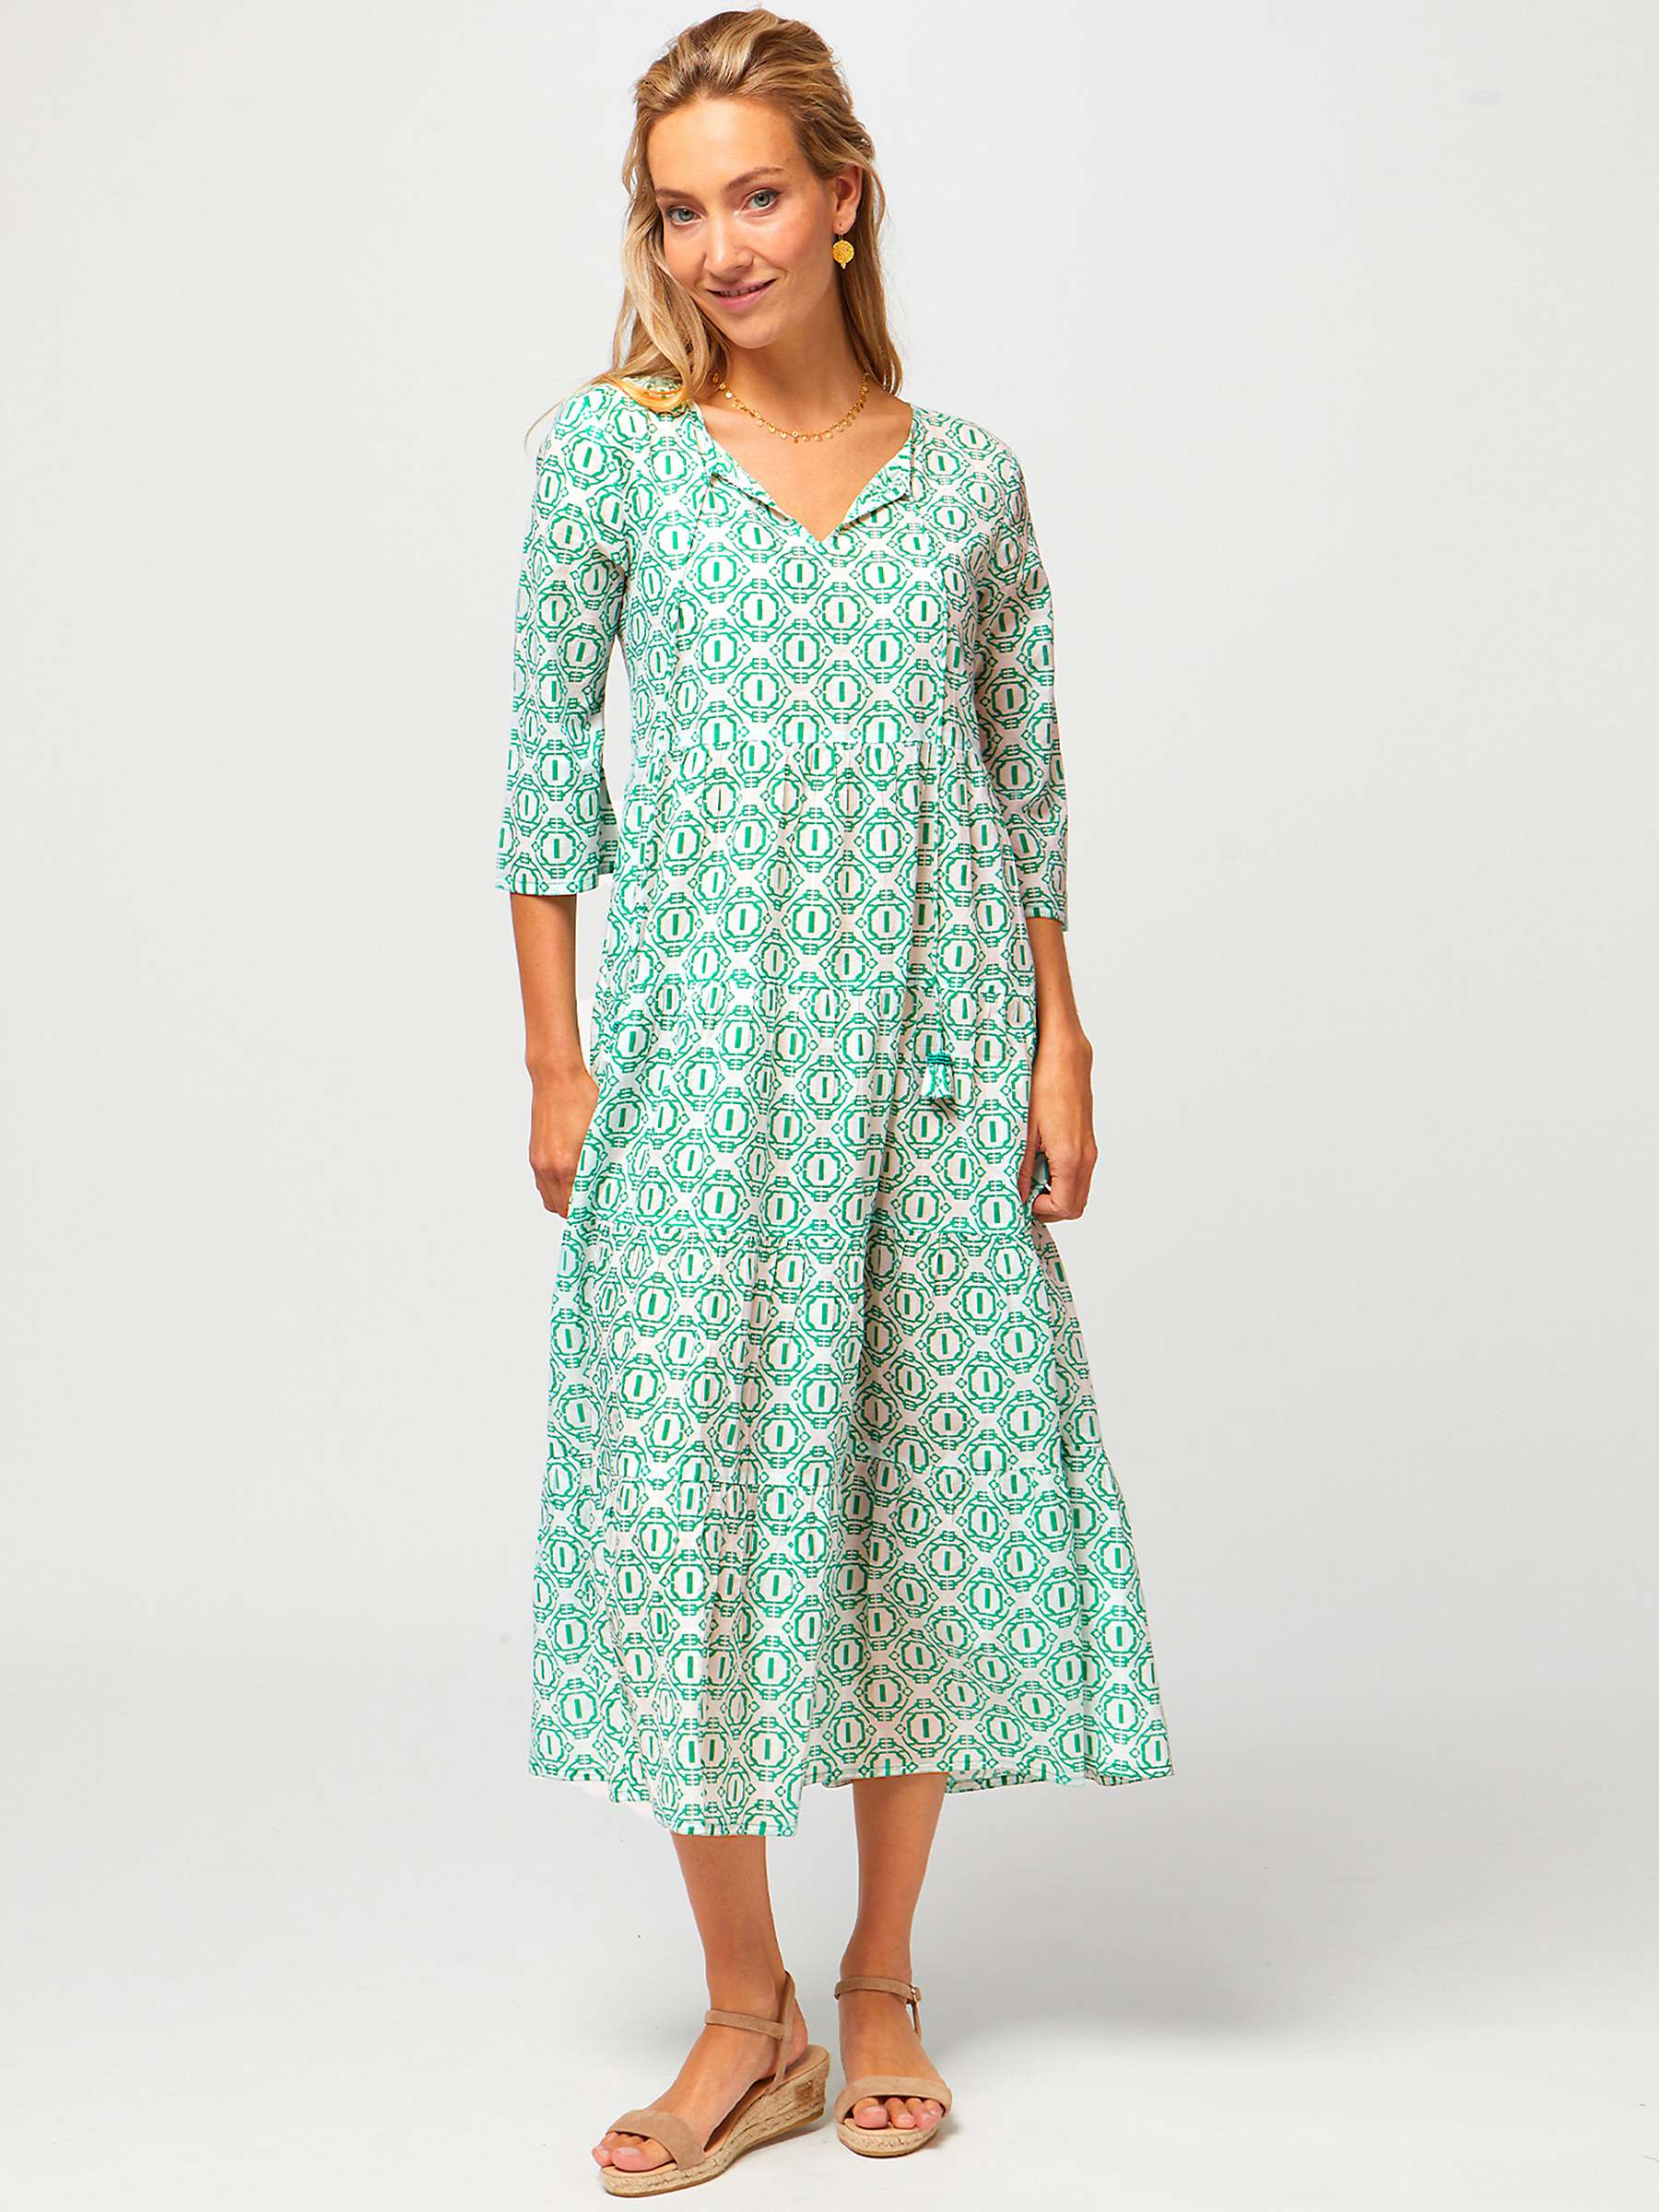 Aspiga Emma Geo Print Tiered Midi Dress, Green/Multi at John Lewis ...